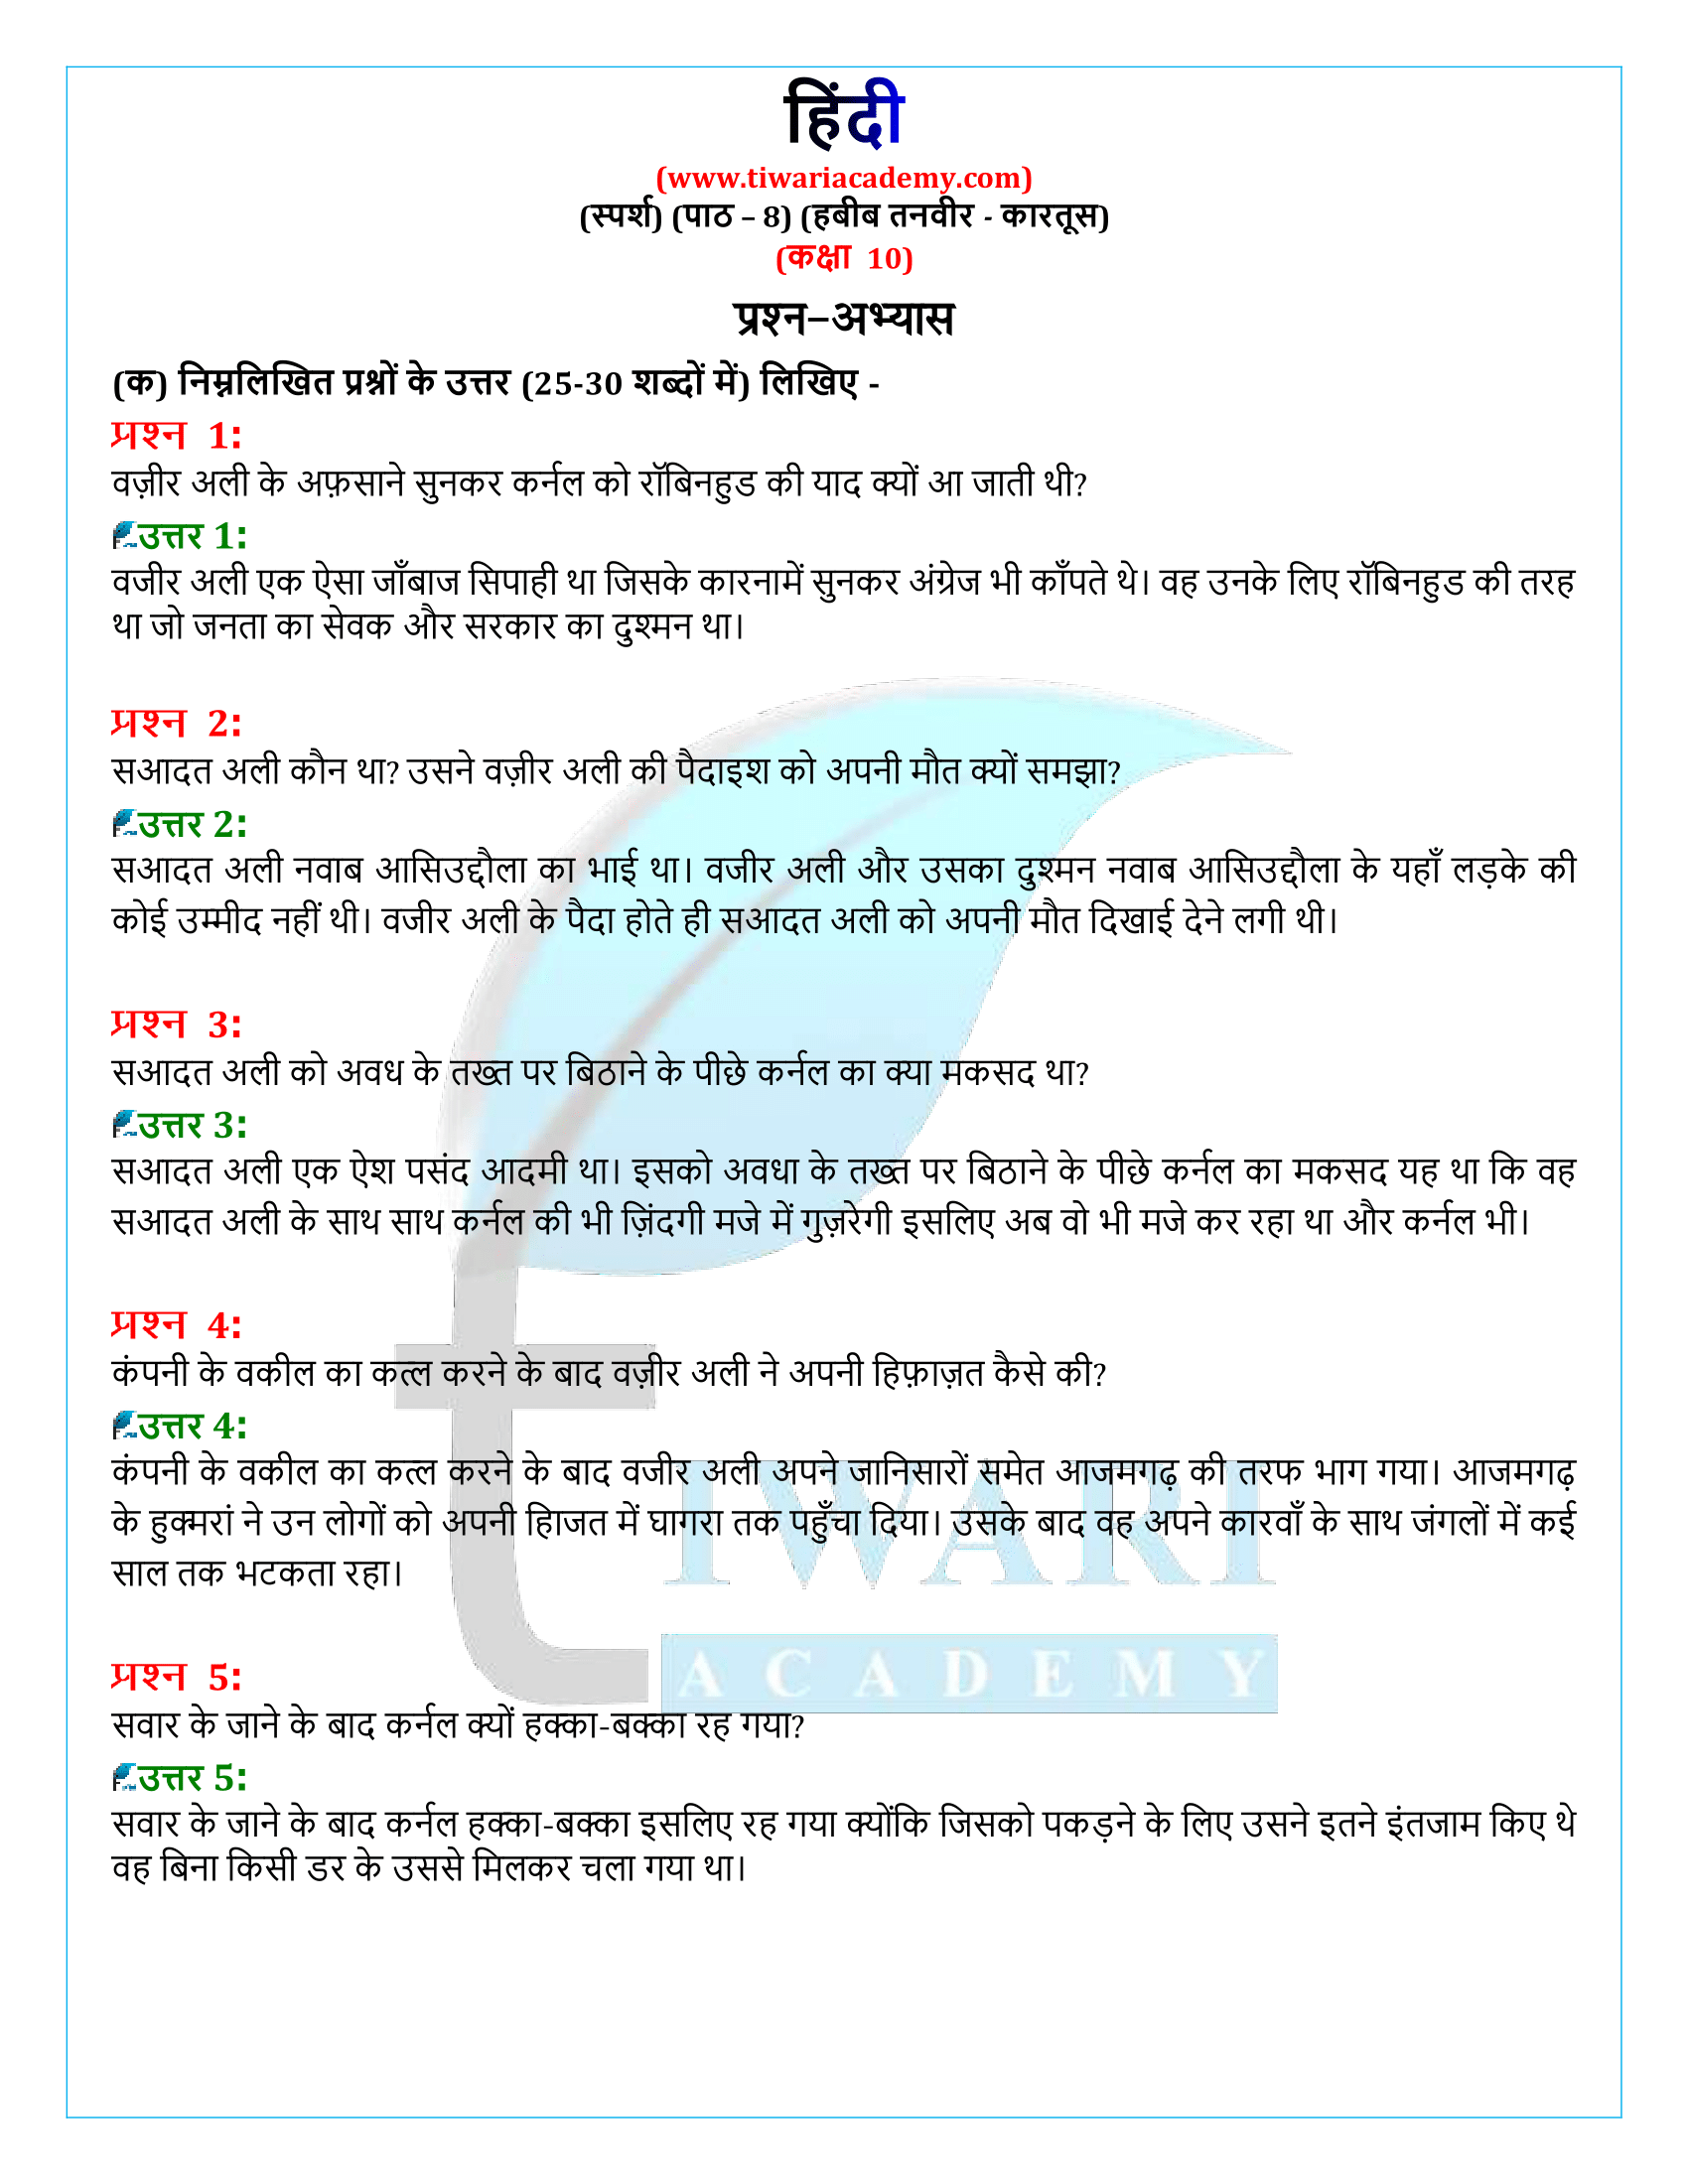 कक्षा 10 हिंदी स्पर्श गद्य अध्याय 8 के प्रश्न उत्तर